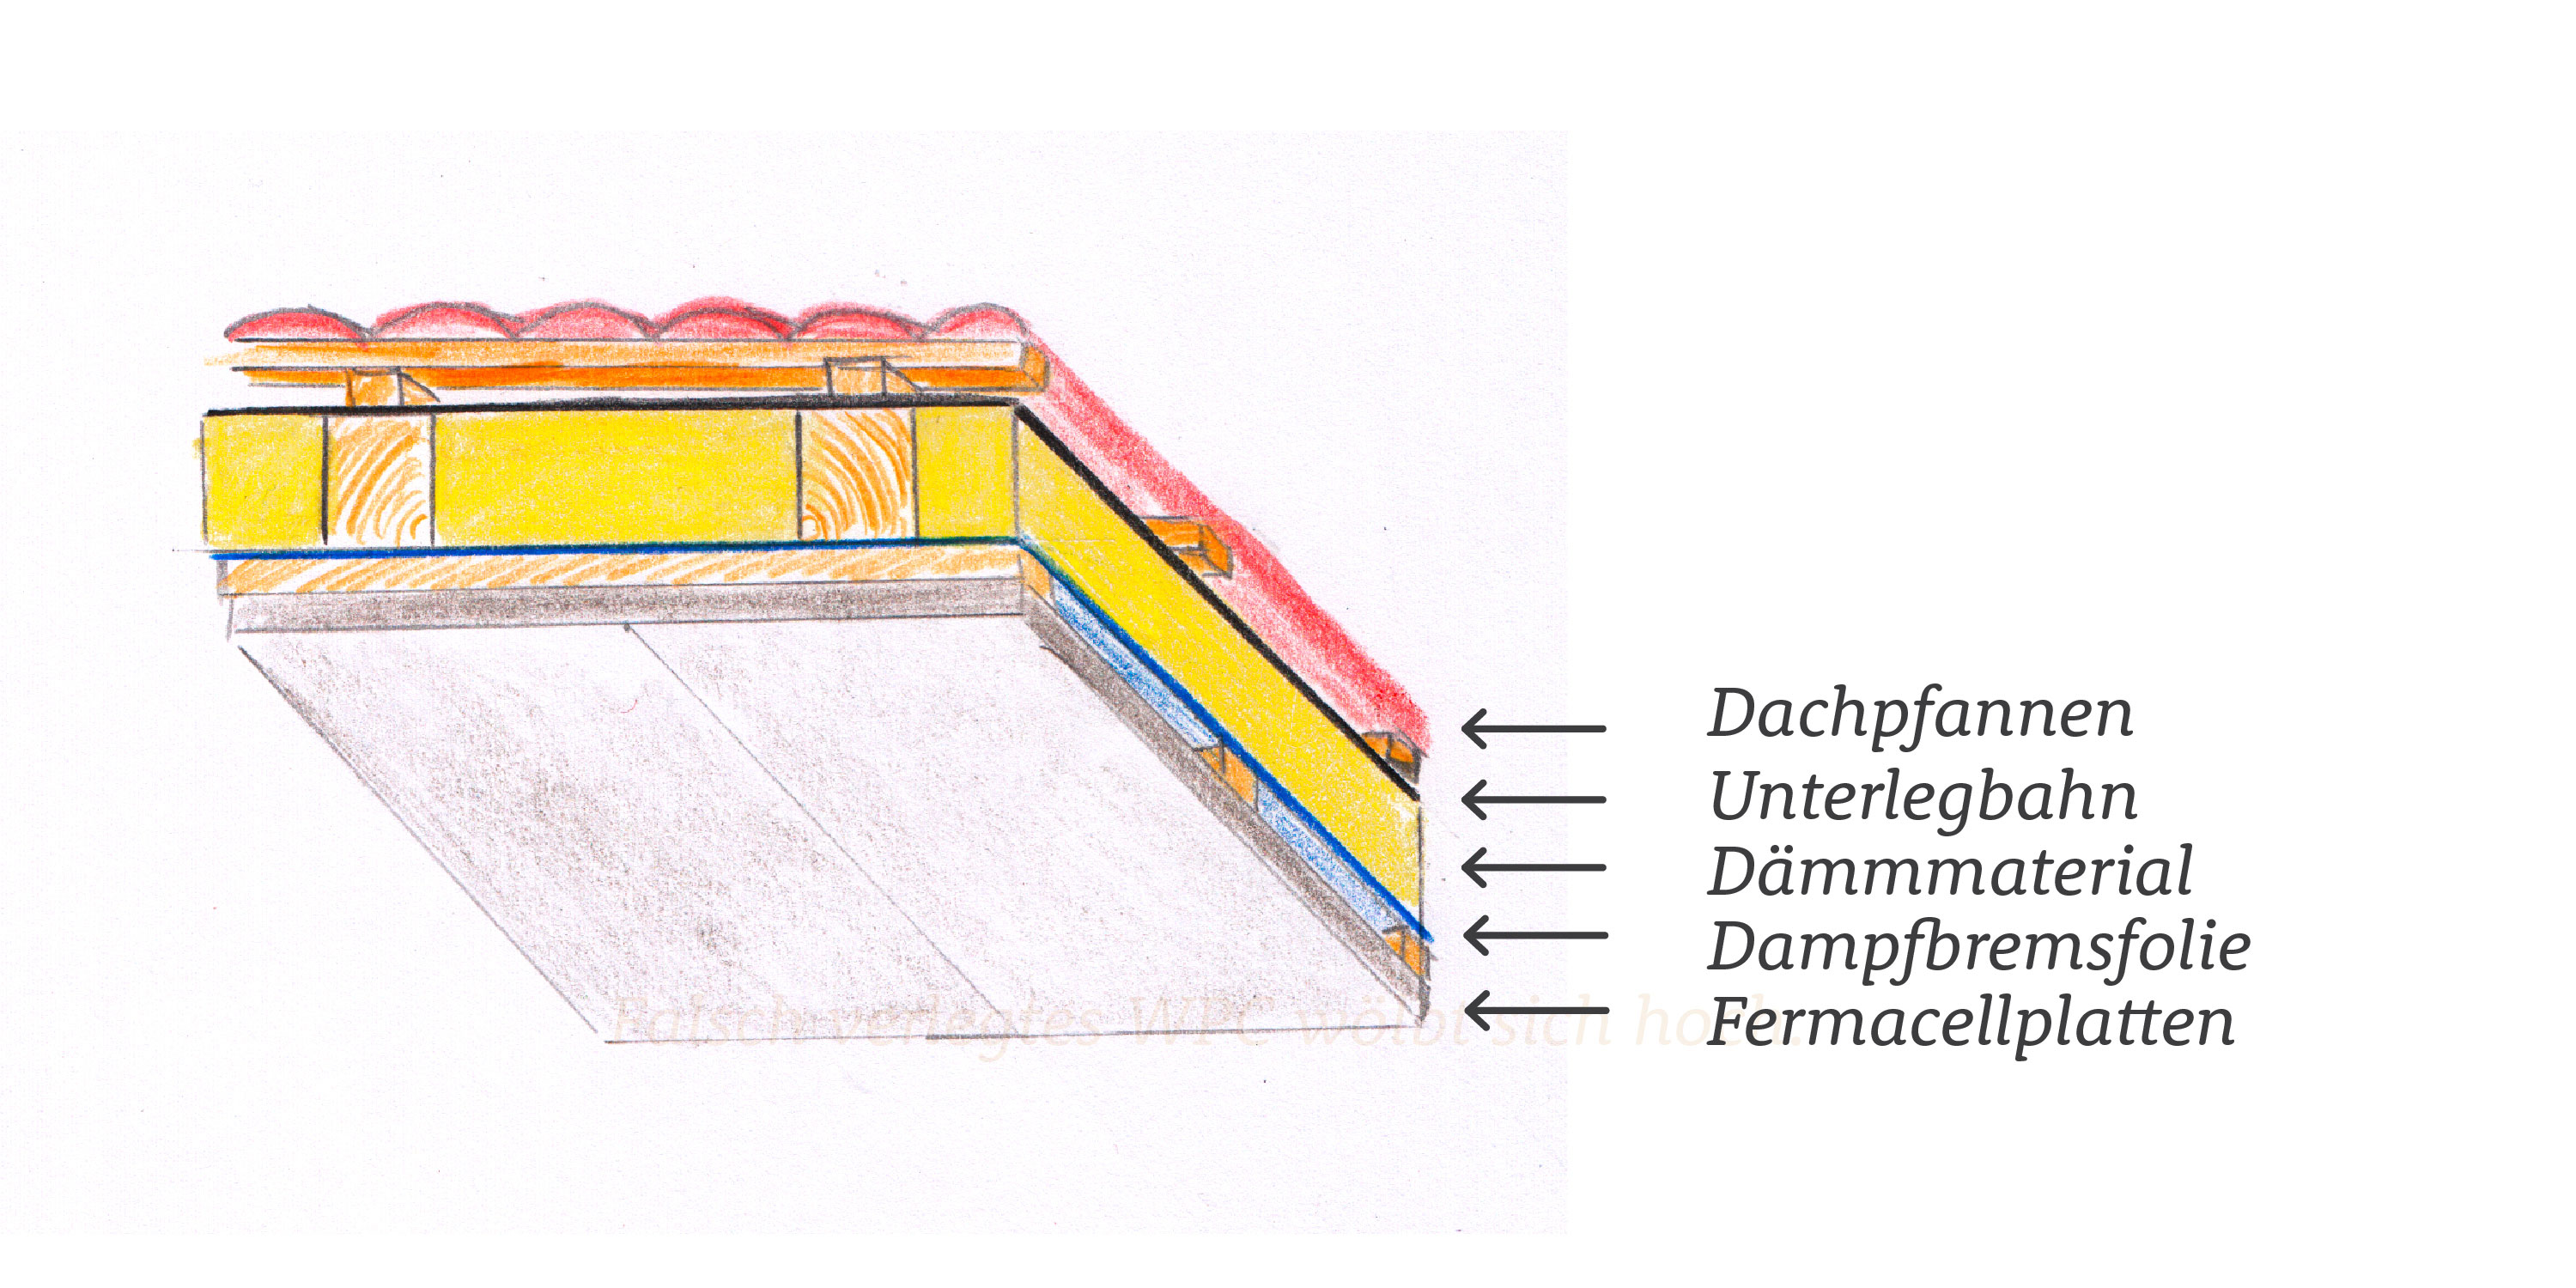 Dachdämmung mit Dämmmaterial, Dampfbremsfolie und Fermacellplatten